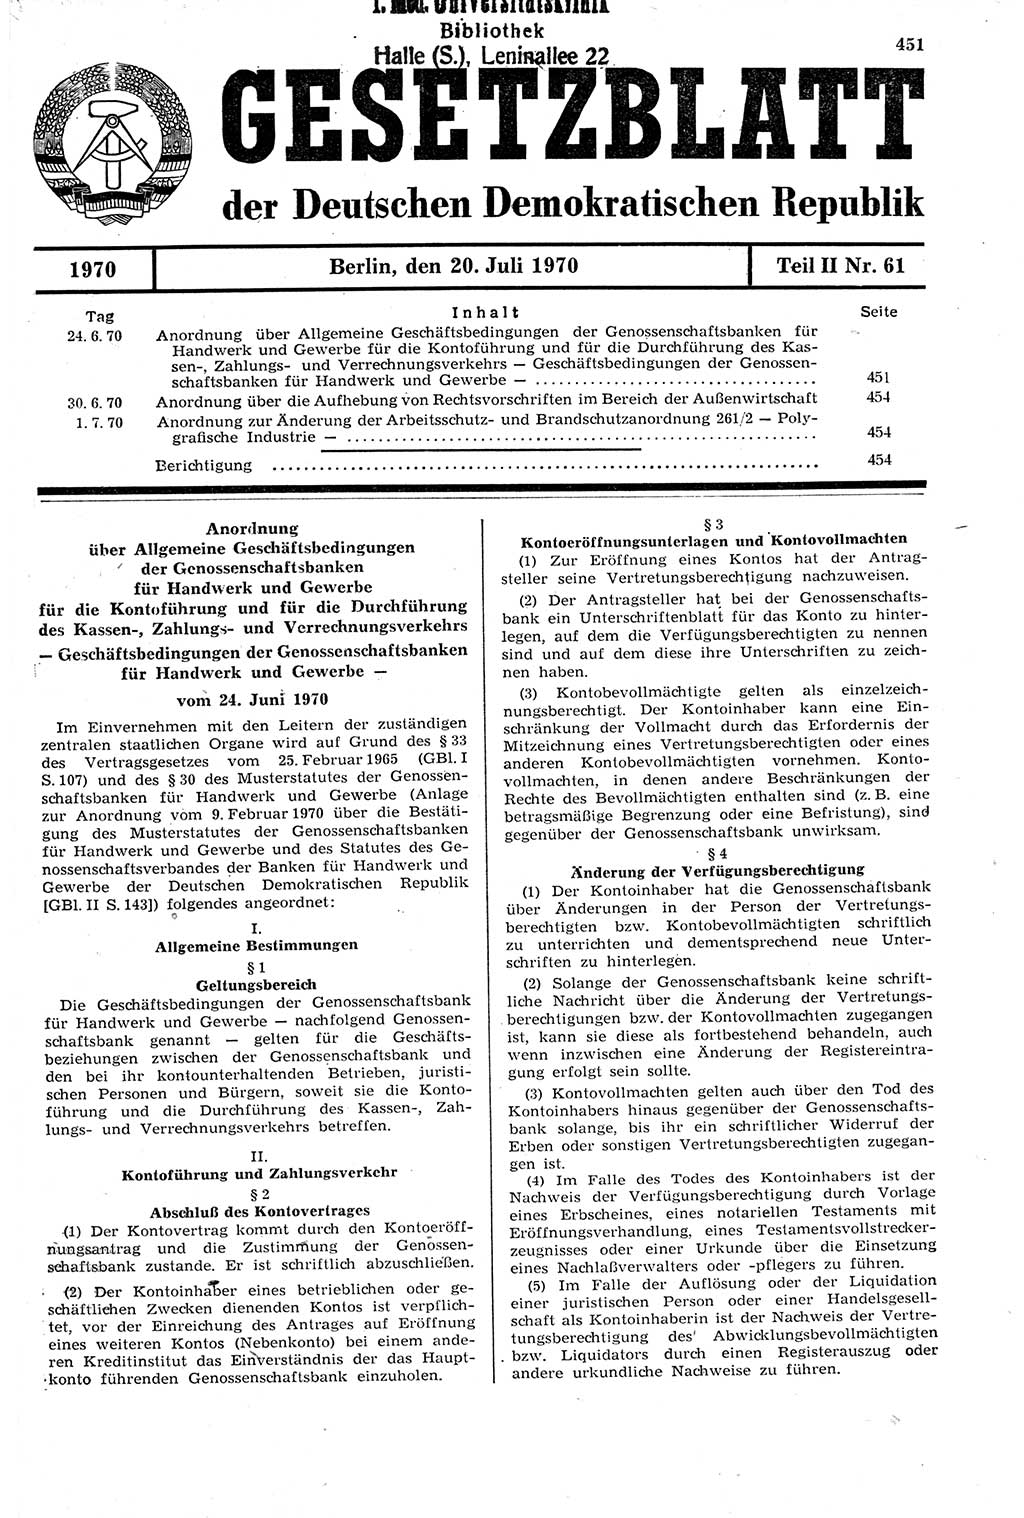 Gesetzblatt (GBl.) der Deutschen Demokratischen Republik (DDR) Teil ⅠⅠ 1970, Seite 451 (GBl. DDR ⅠⅠ 1970, S. 451)